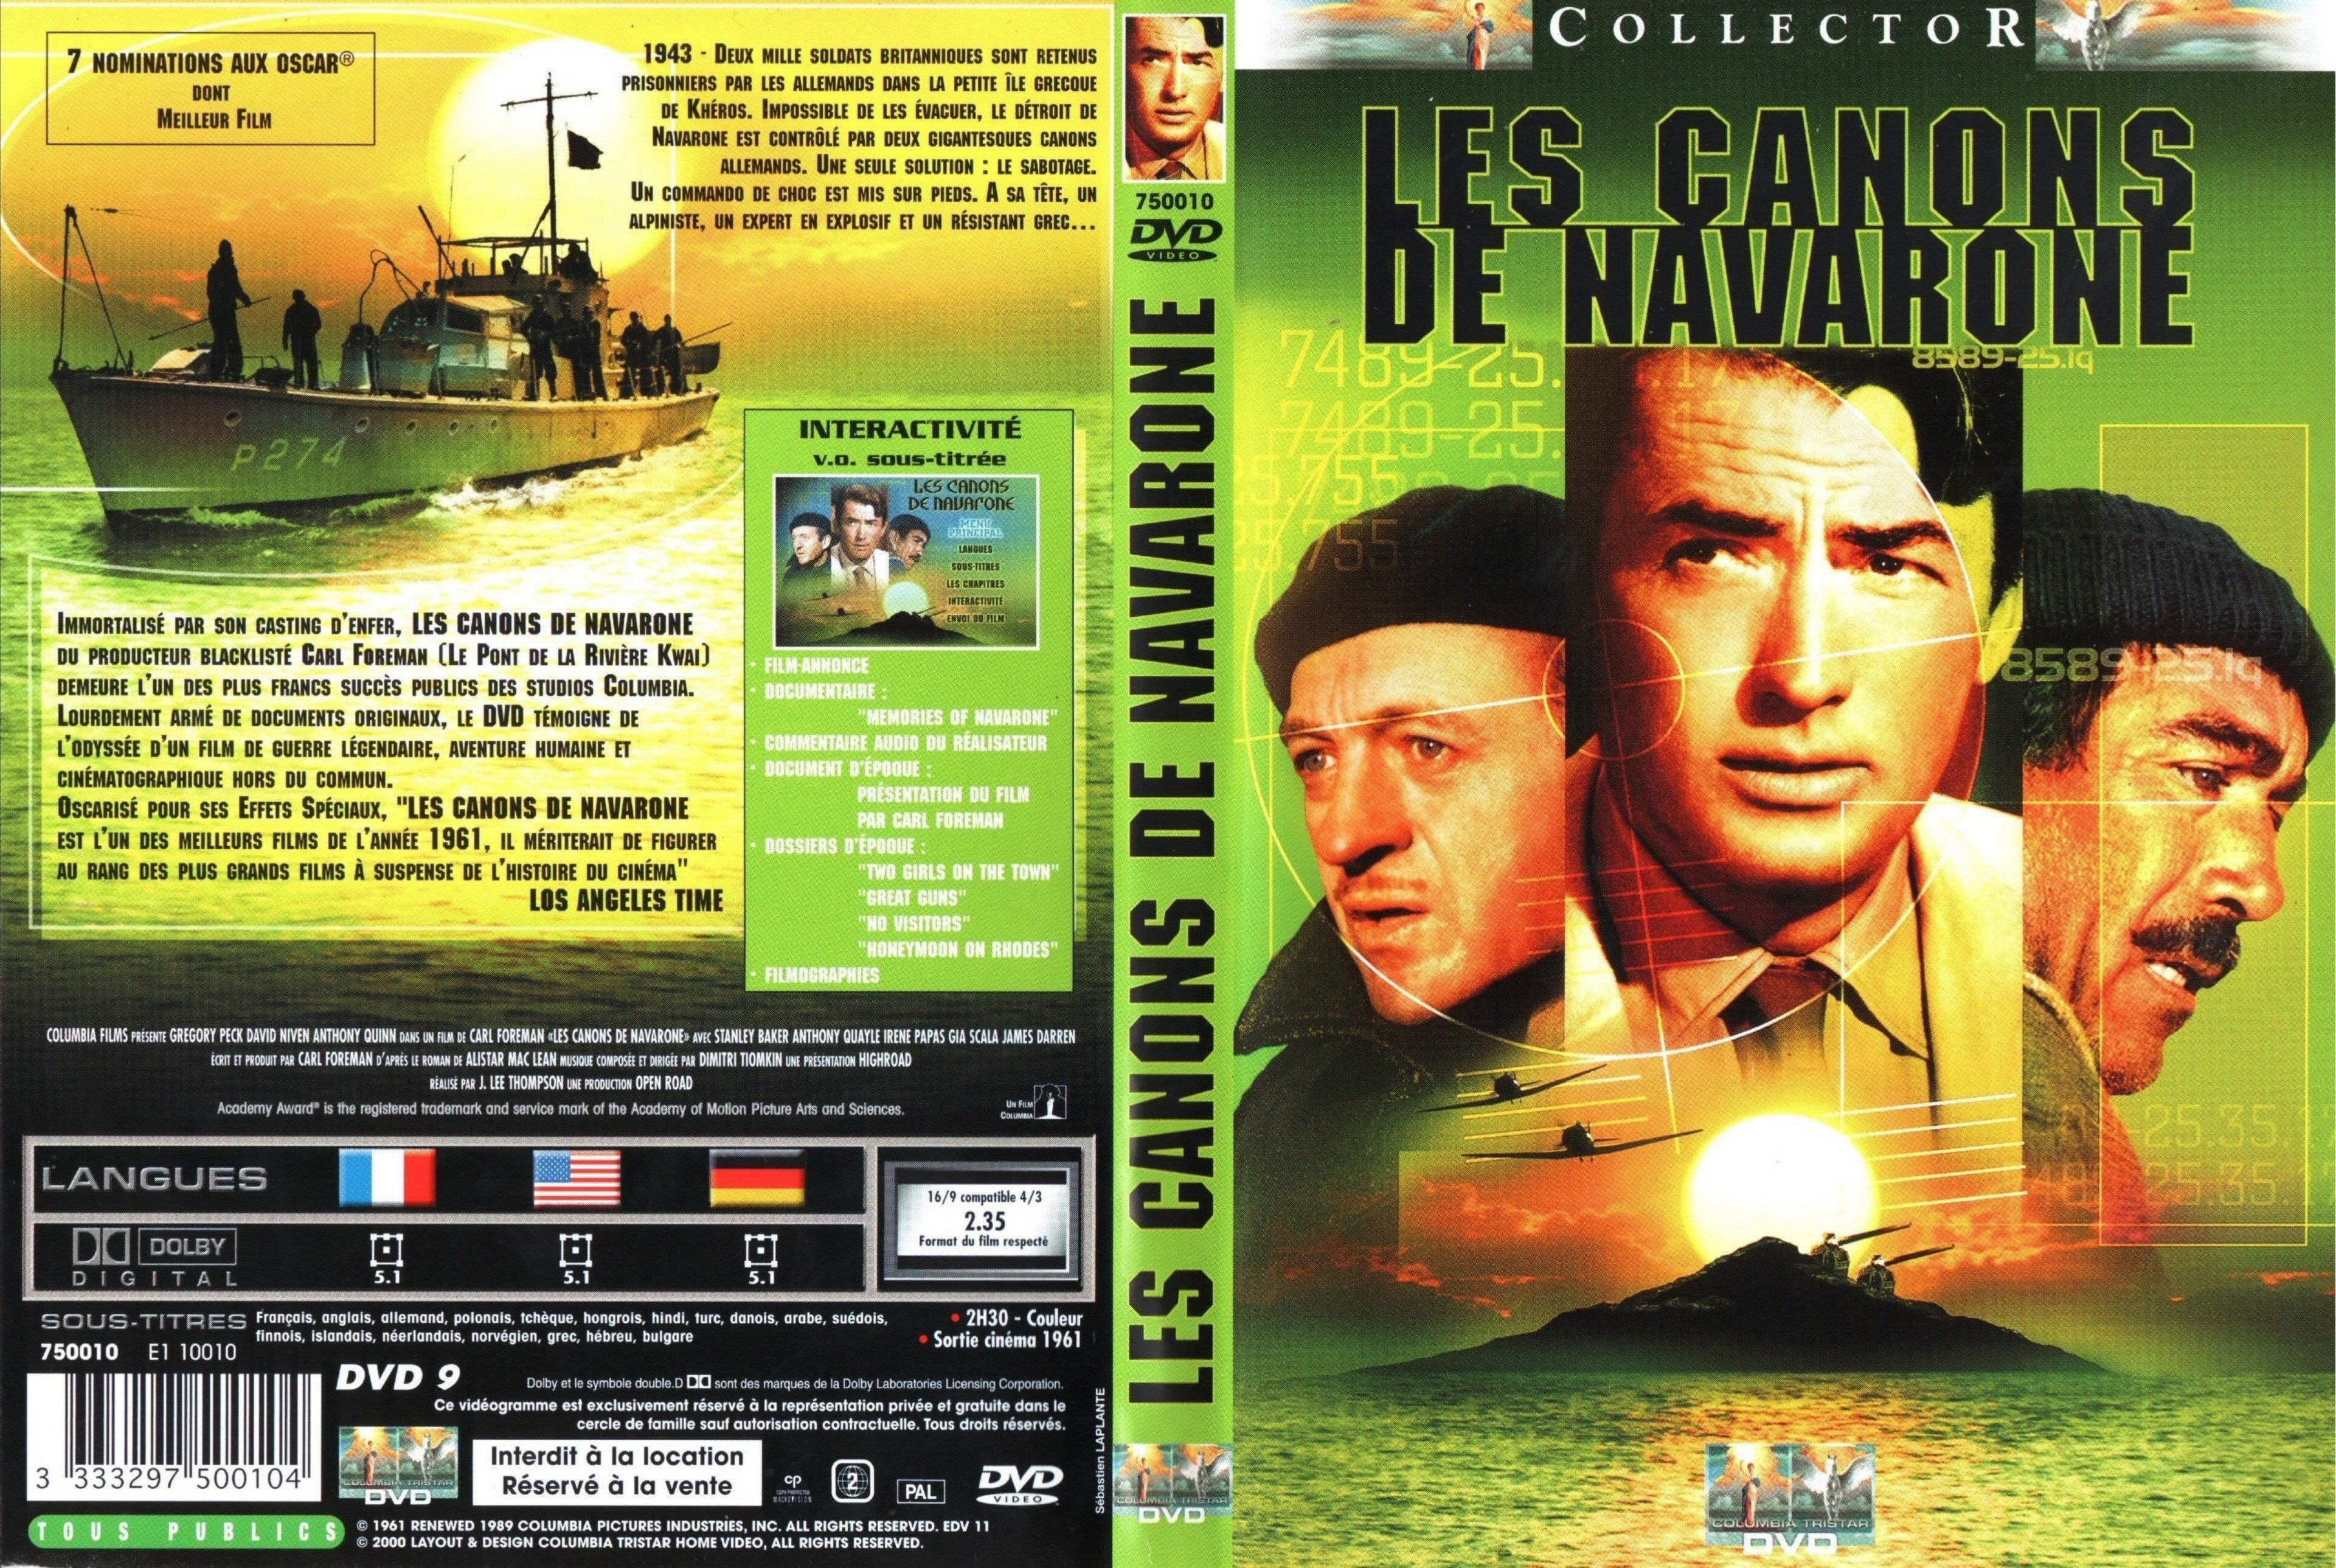 Jaquette DVD Les canons de Navarone